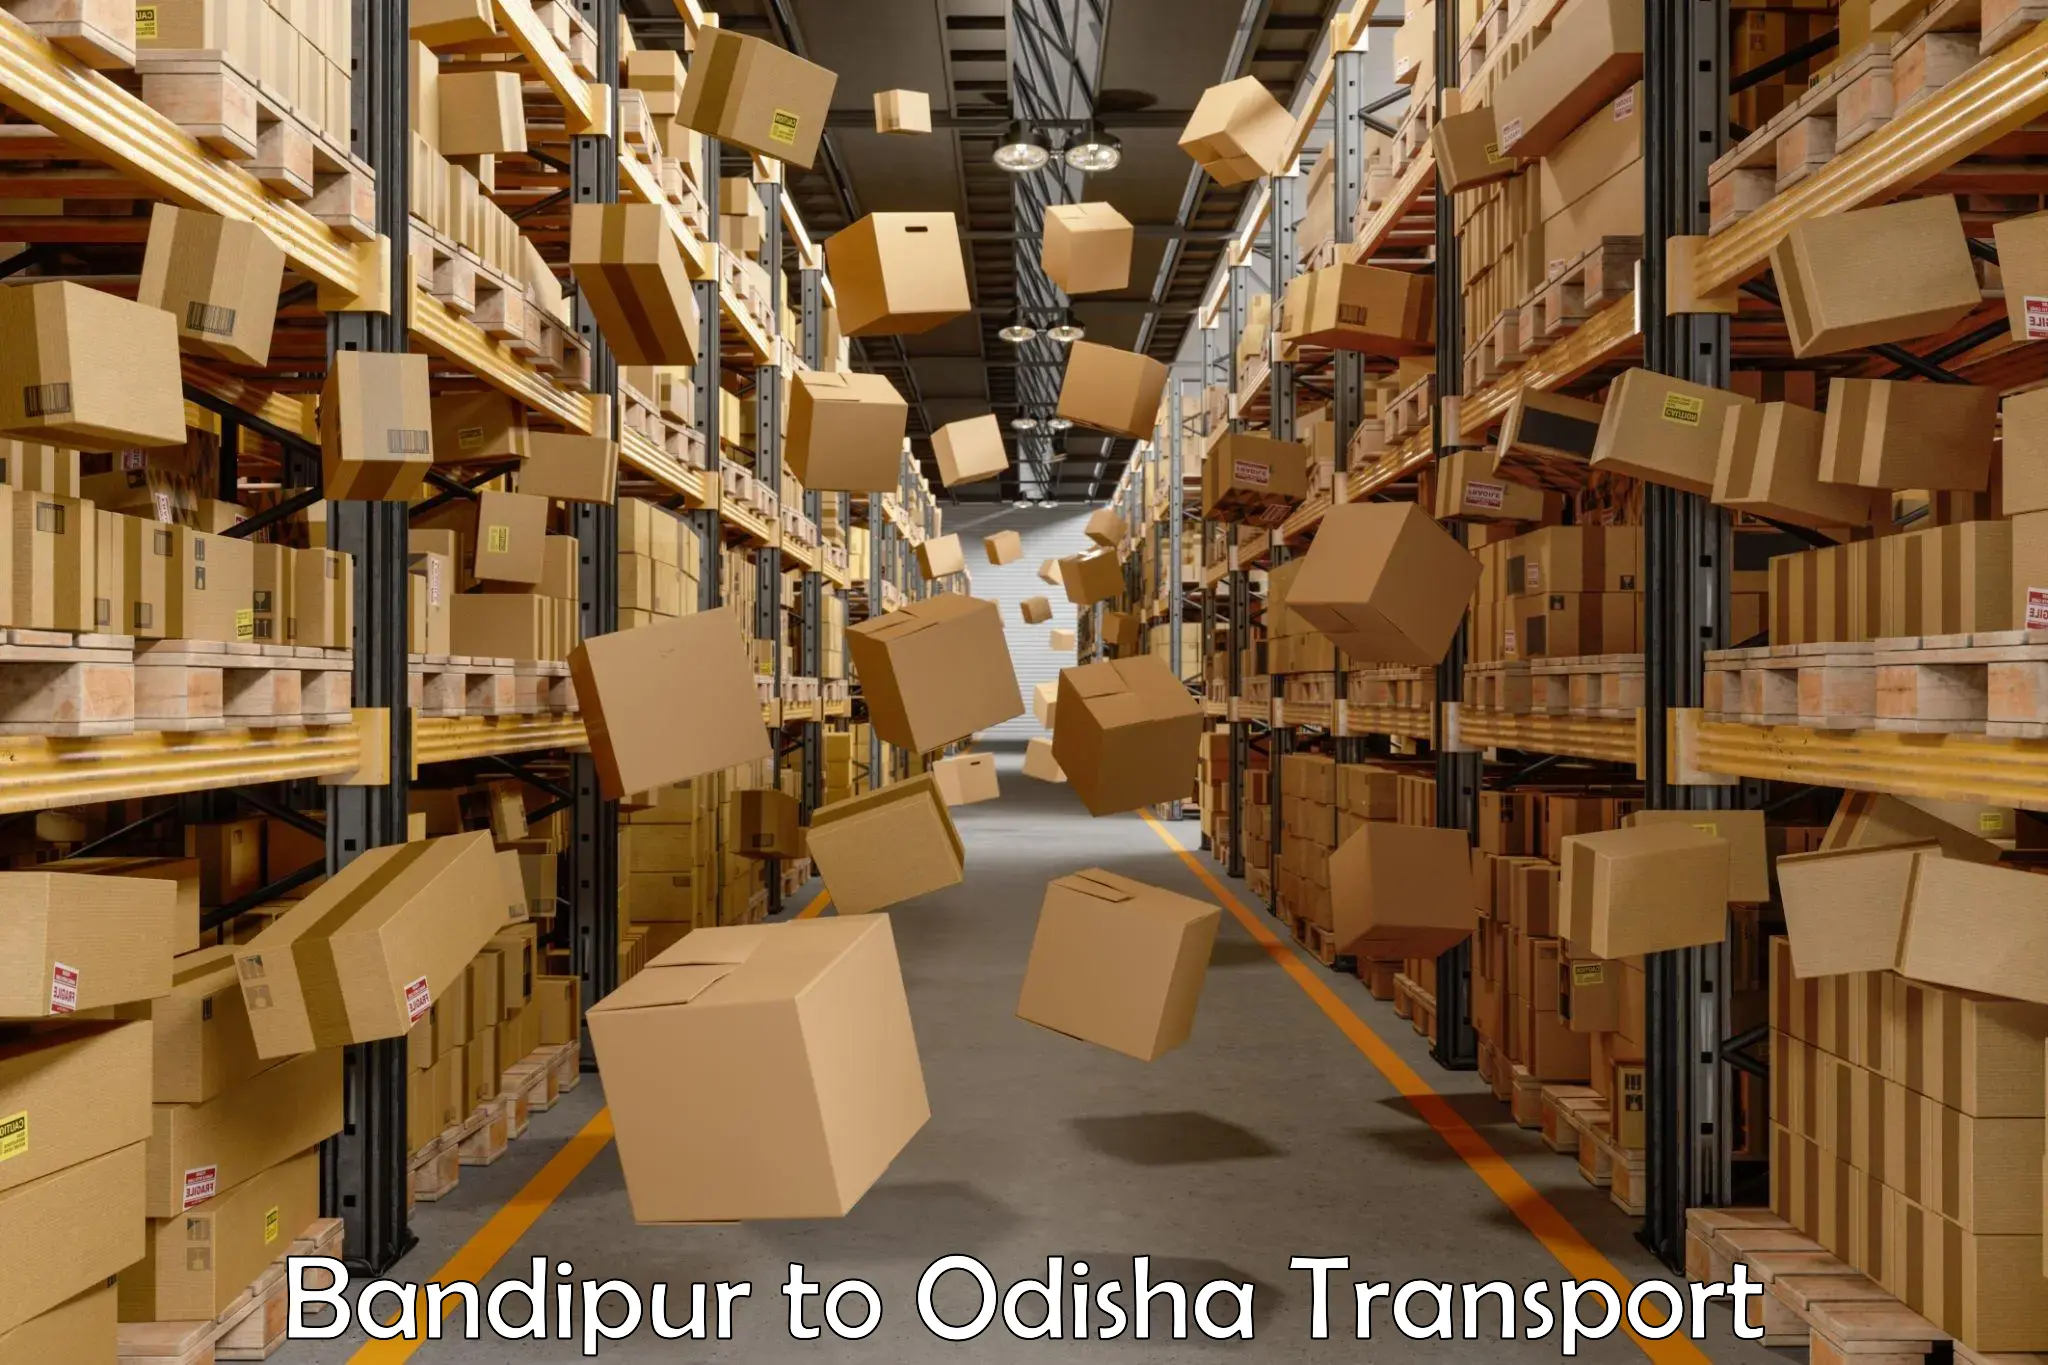 Land transport services in Bandipur to Tangi